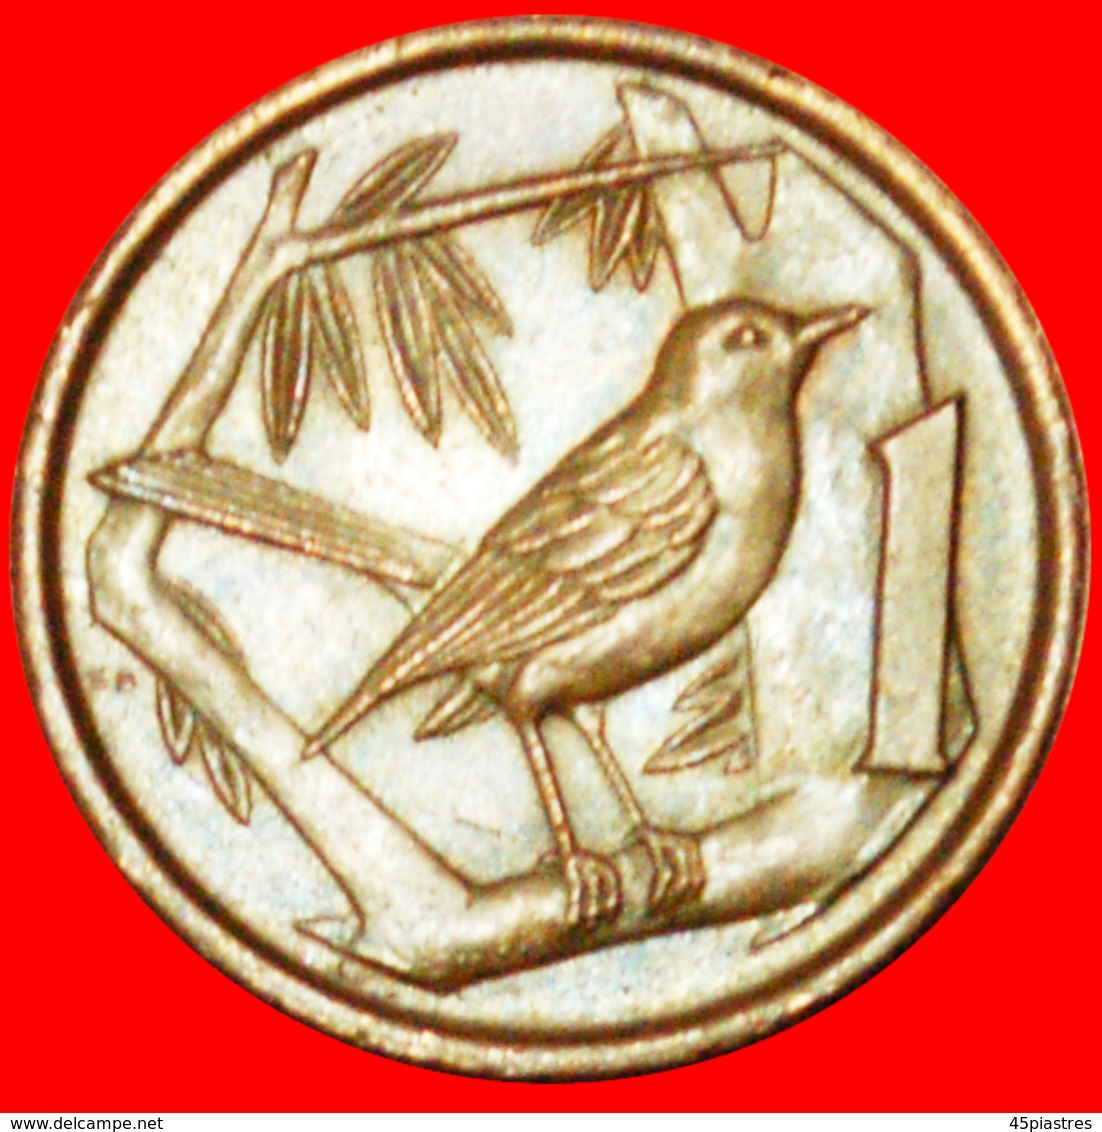 # BIRD (1972-1986): CAYMAN ISLANDS ★ 1 CENT 1977! LOW START ★ NO RESERVE! - Cayman Islands